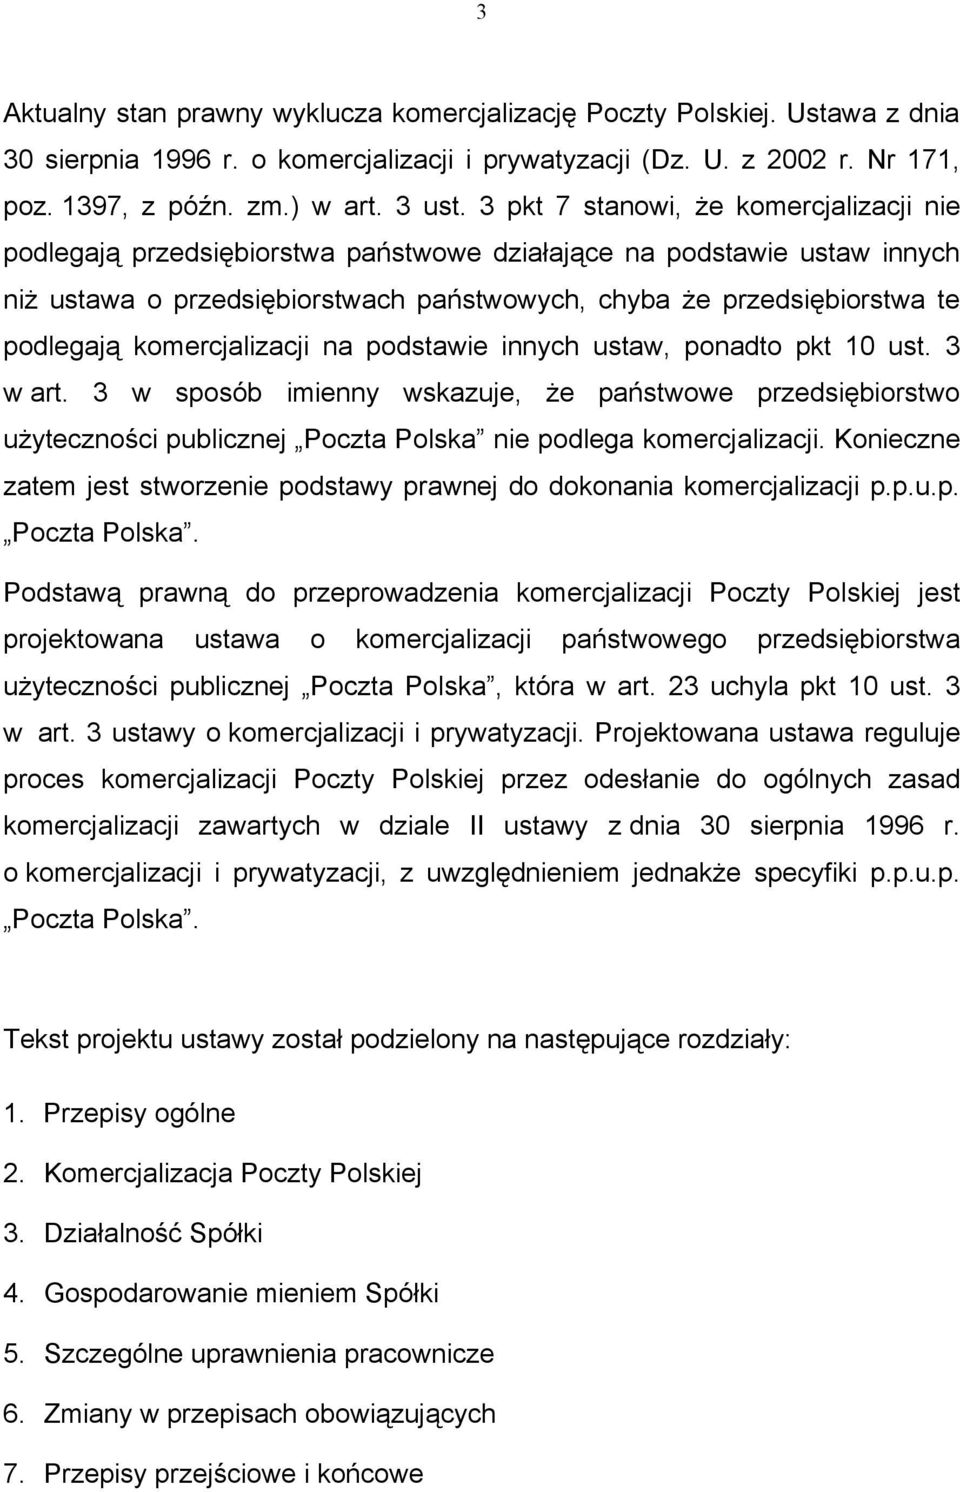 komercjalizacji na podstawie innych ustaw, ponadto pkt 10 ust. 3 w art. 3 w sposób imienny wskazuje, że państwowe przedsiębiorstwo użyteczności publicznej Poczta Polska nie podlega komercjalizacji.